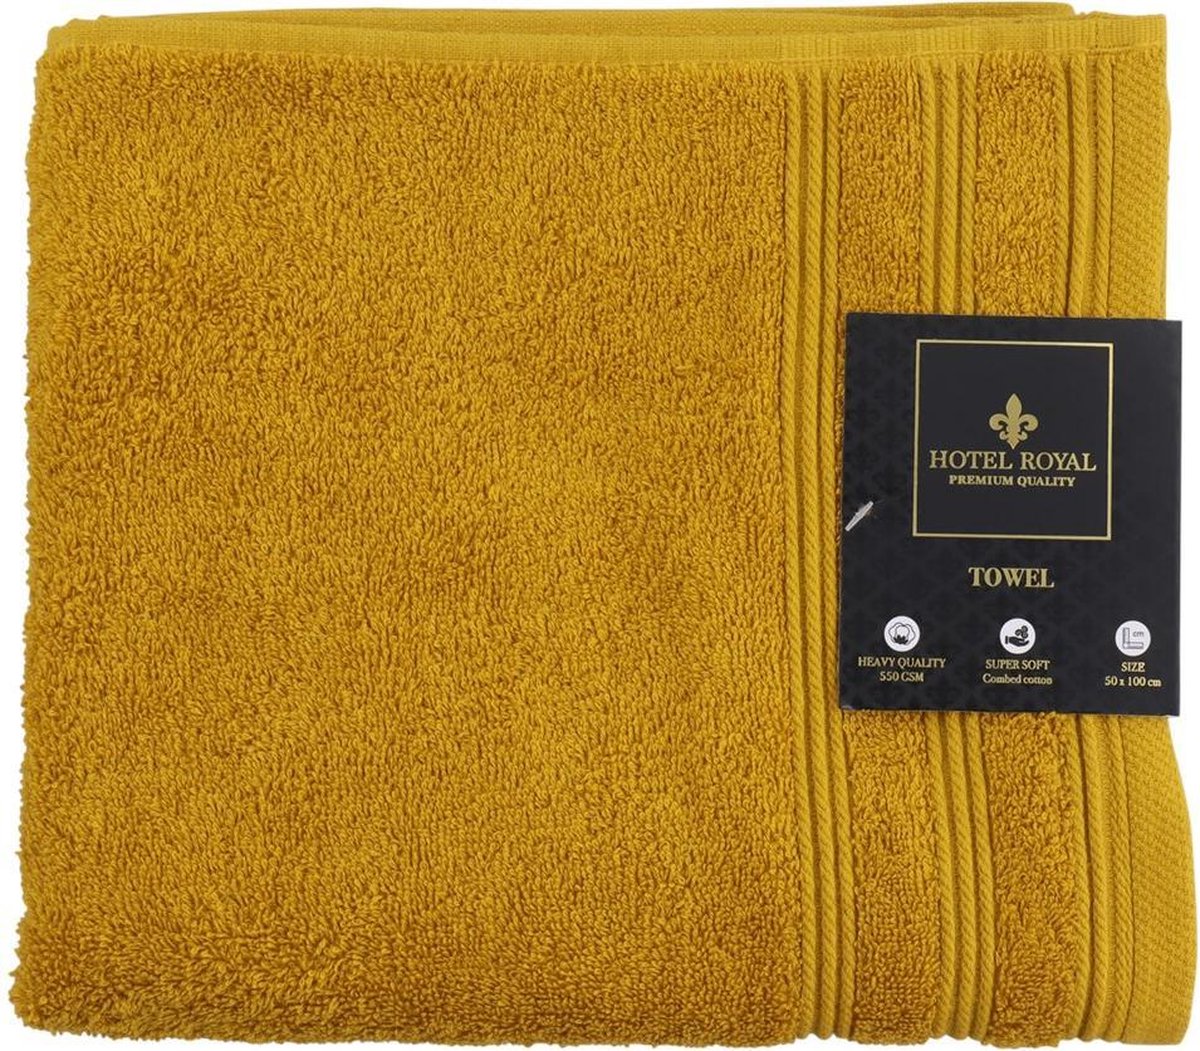 Hotel Handdoek - Badhanddoek Okergeel 50x100 cm - Superzacht Gekamd katoen / 550 GSM Zware kwaliteit Badhanddoek - Hotel handdoek - badlaken - badhandoek - Super soft - Towels - serviette de bain